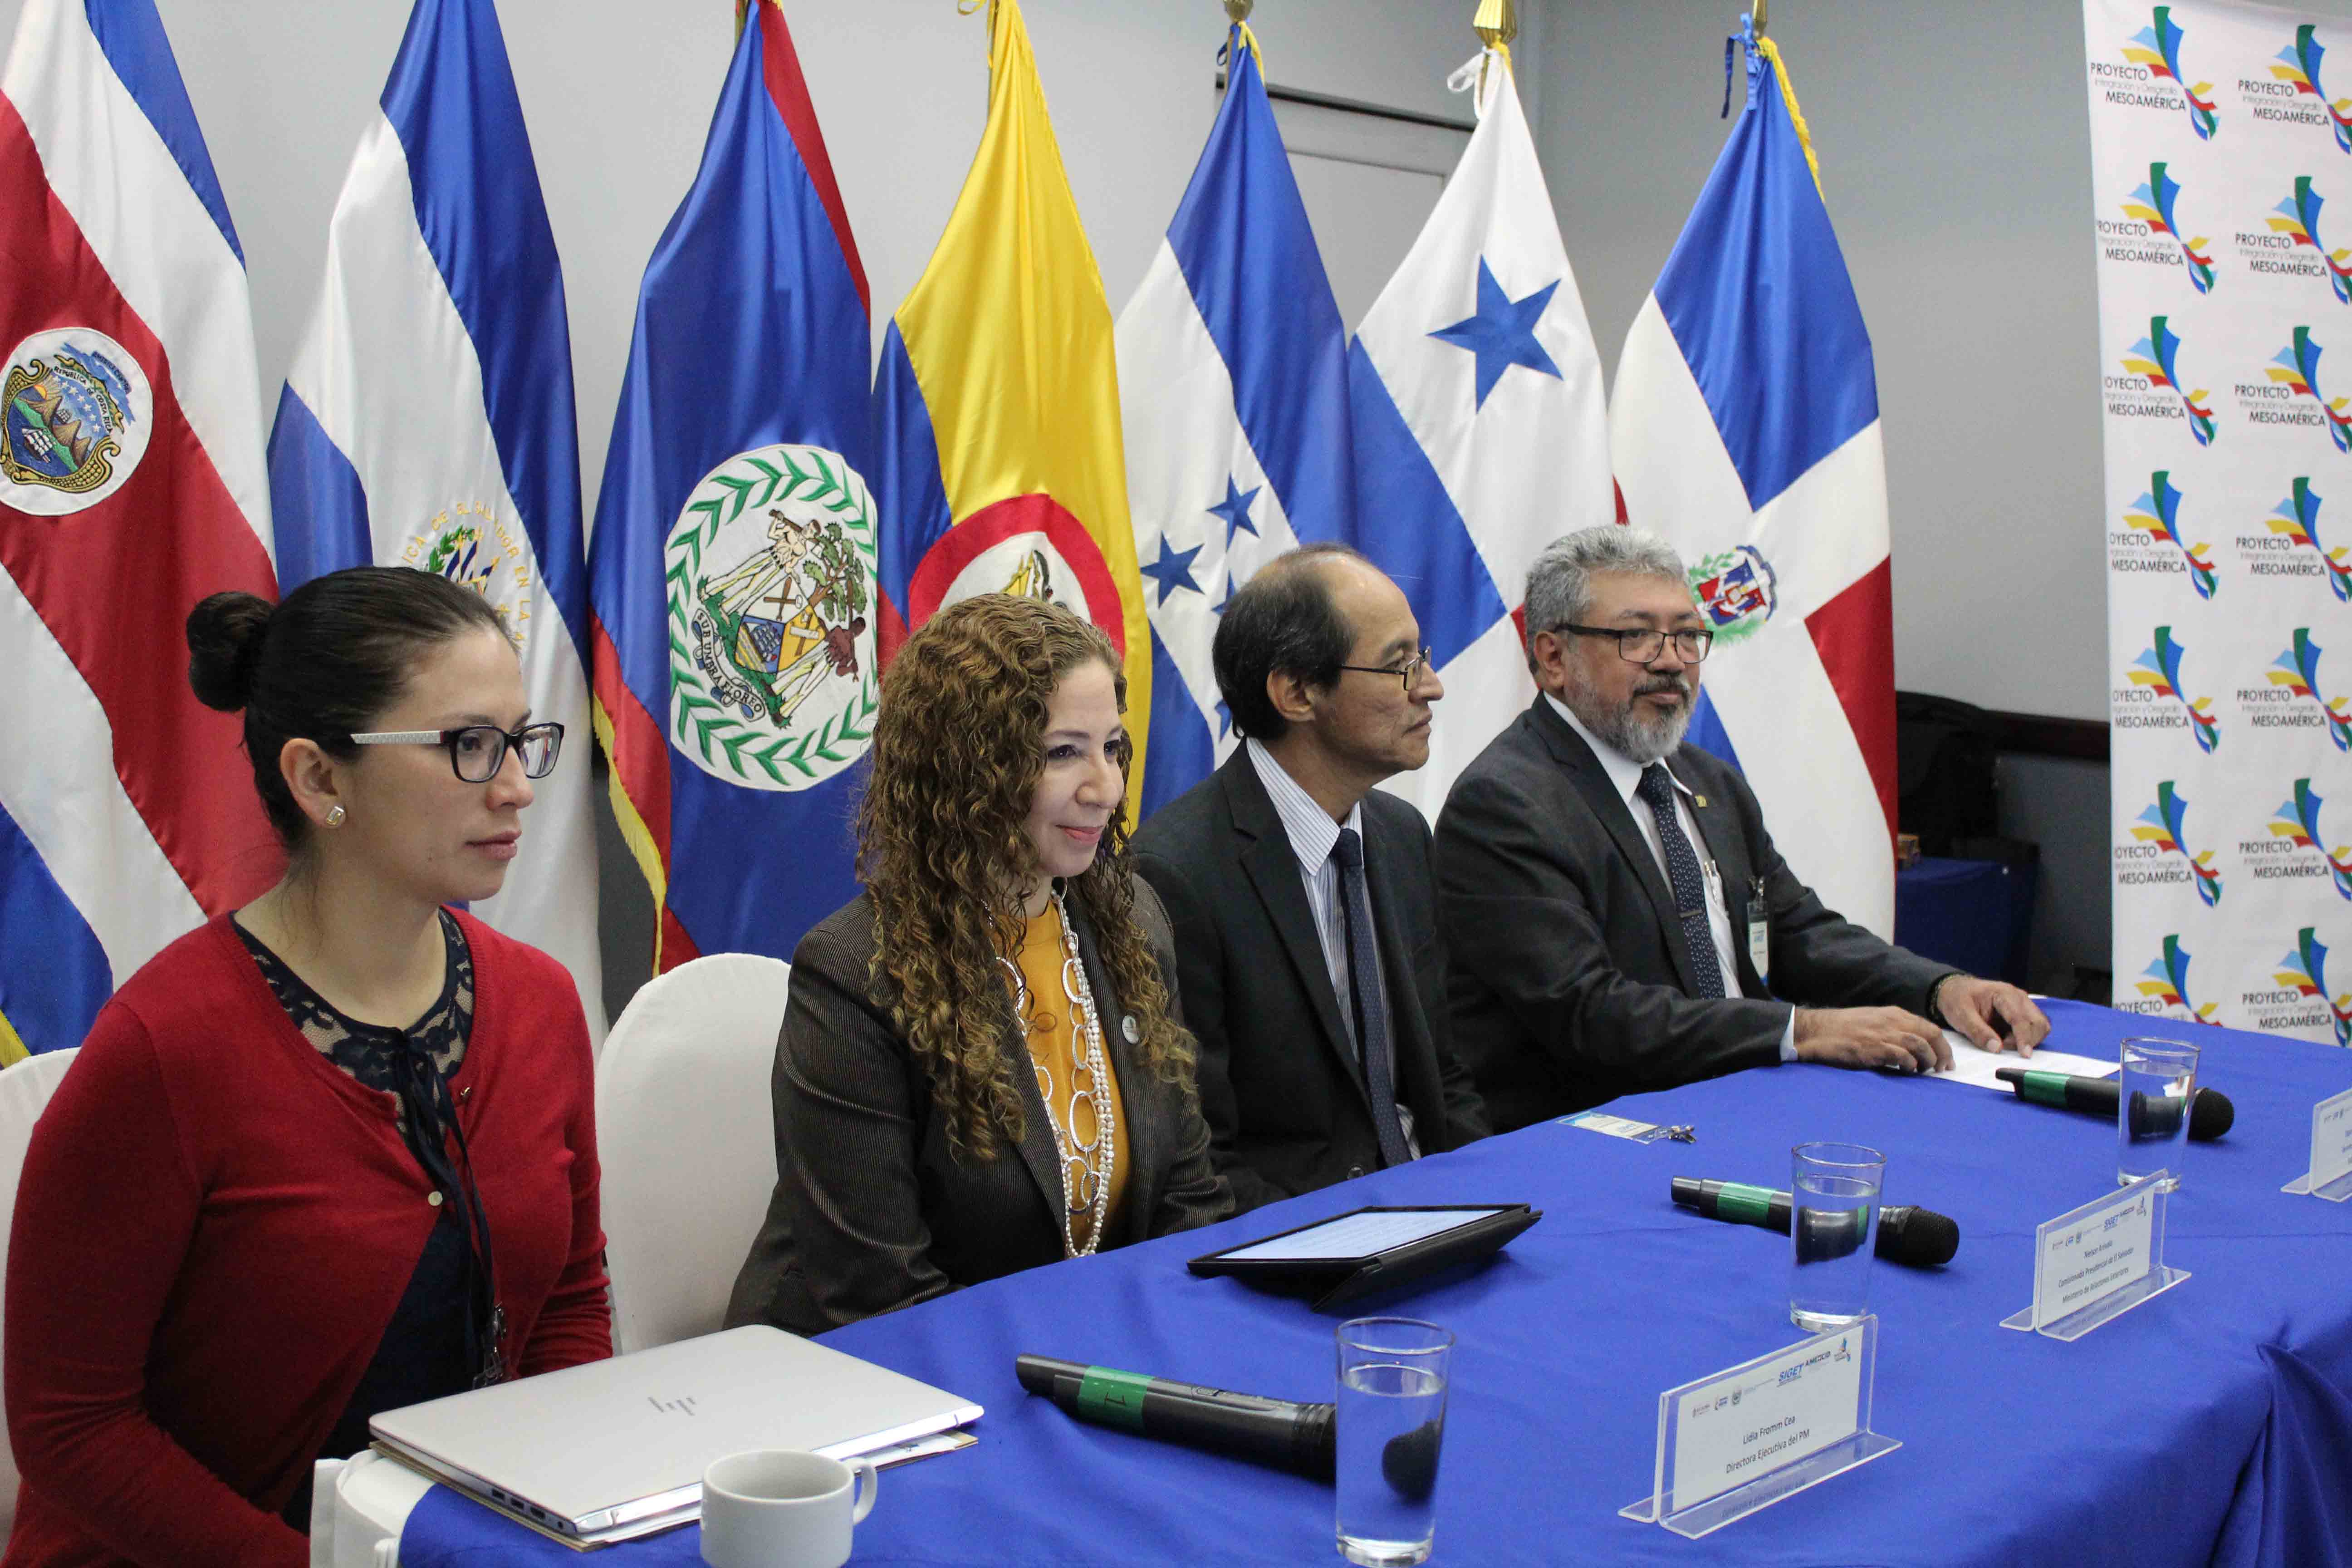 ndotel asiste a taller que redefine la agenda regional de las telecomunicaciones de Mesoamérica